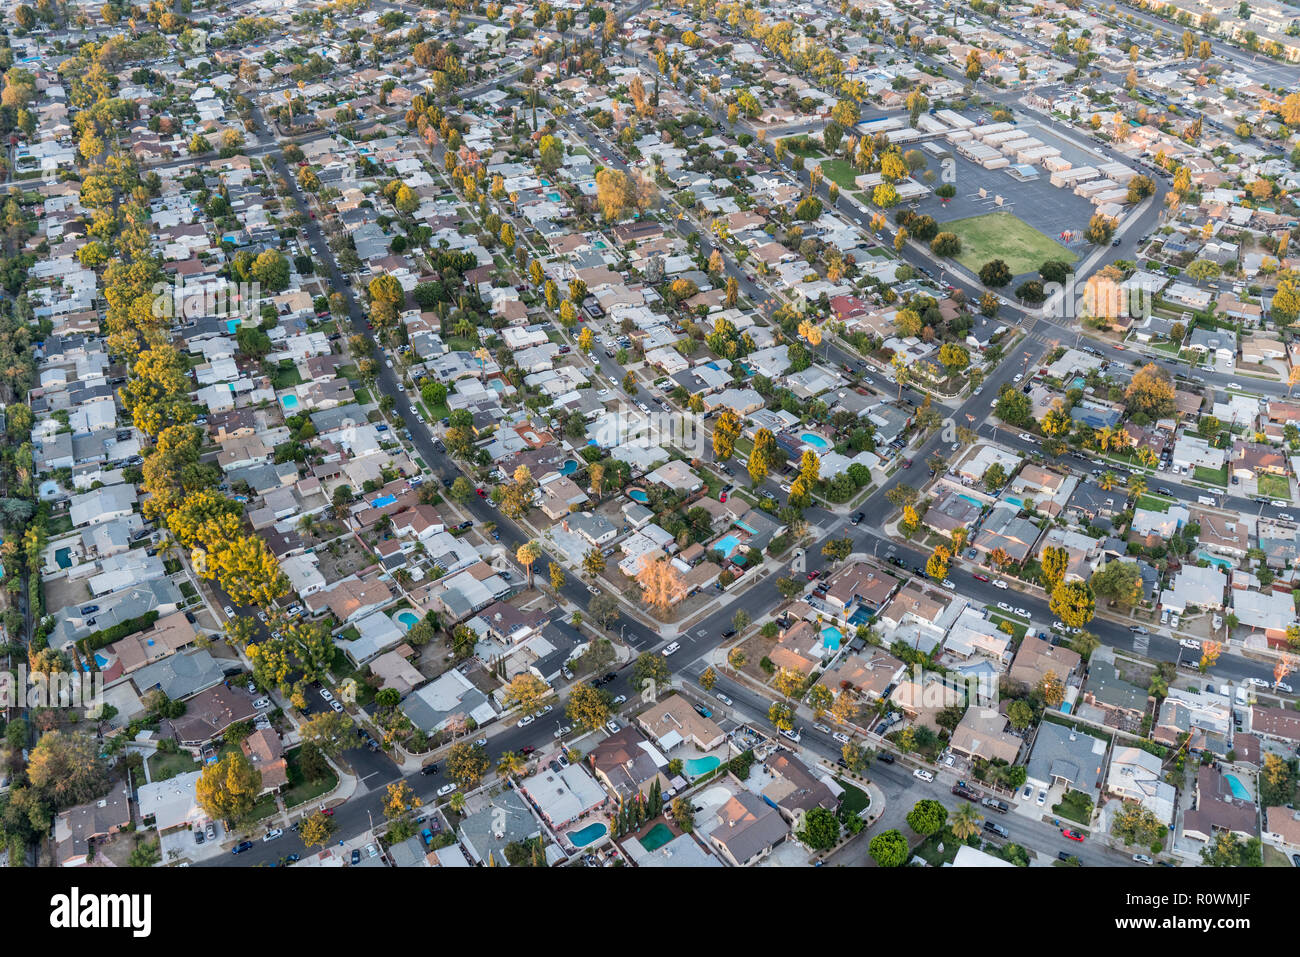 La fin de l'après-midi vue aérienne de maisons et de rues dans la région de la vallée de San Fernando de Los Angeles, Californie. Banque D'Images